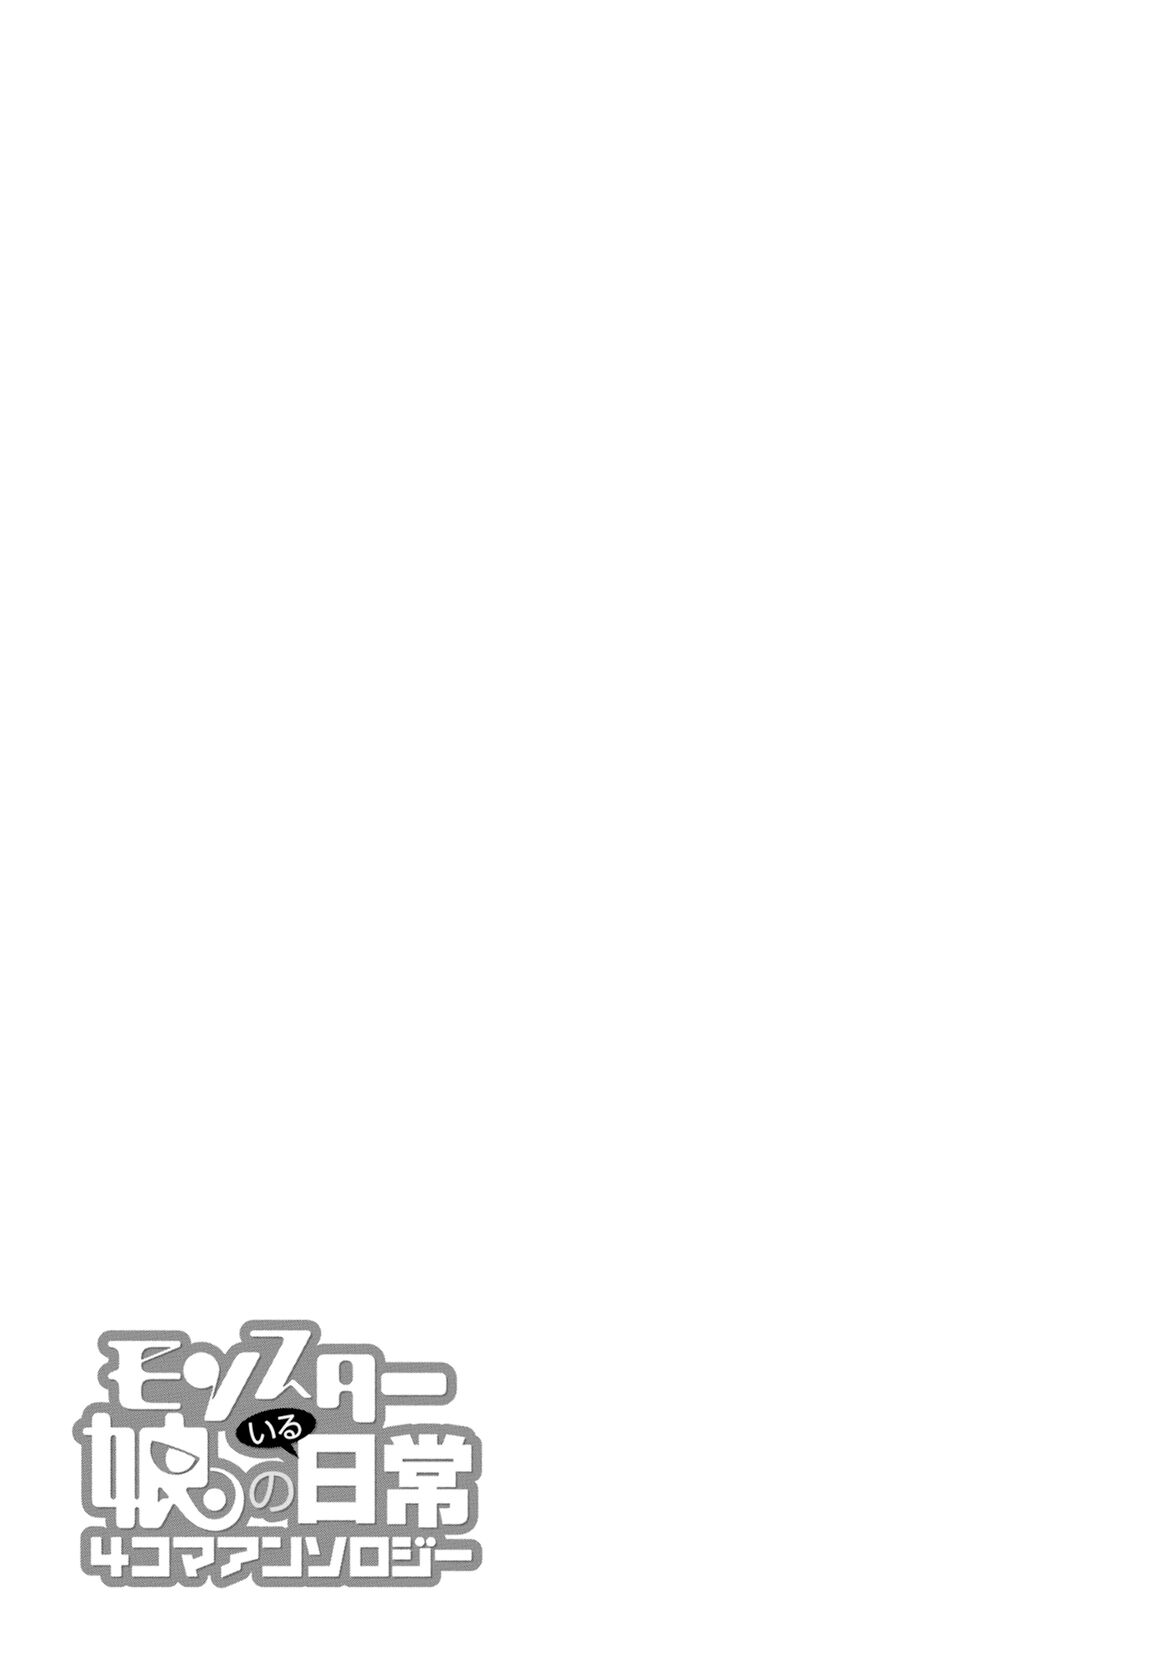 Monster Musume no Iru Nichijou - 4-koma Anthology Chapter 1 - MyToon.net